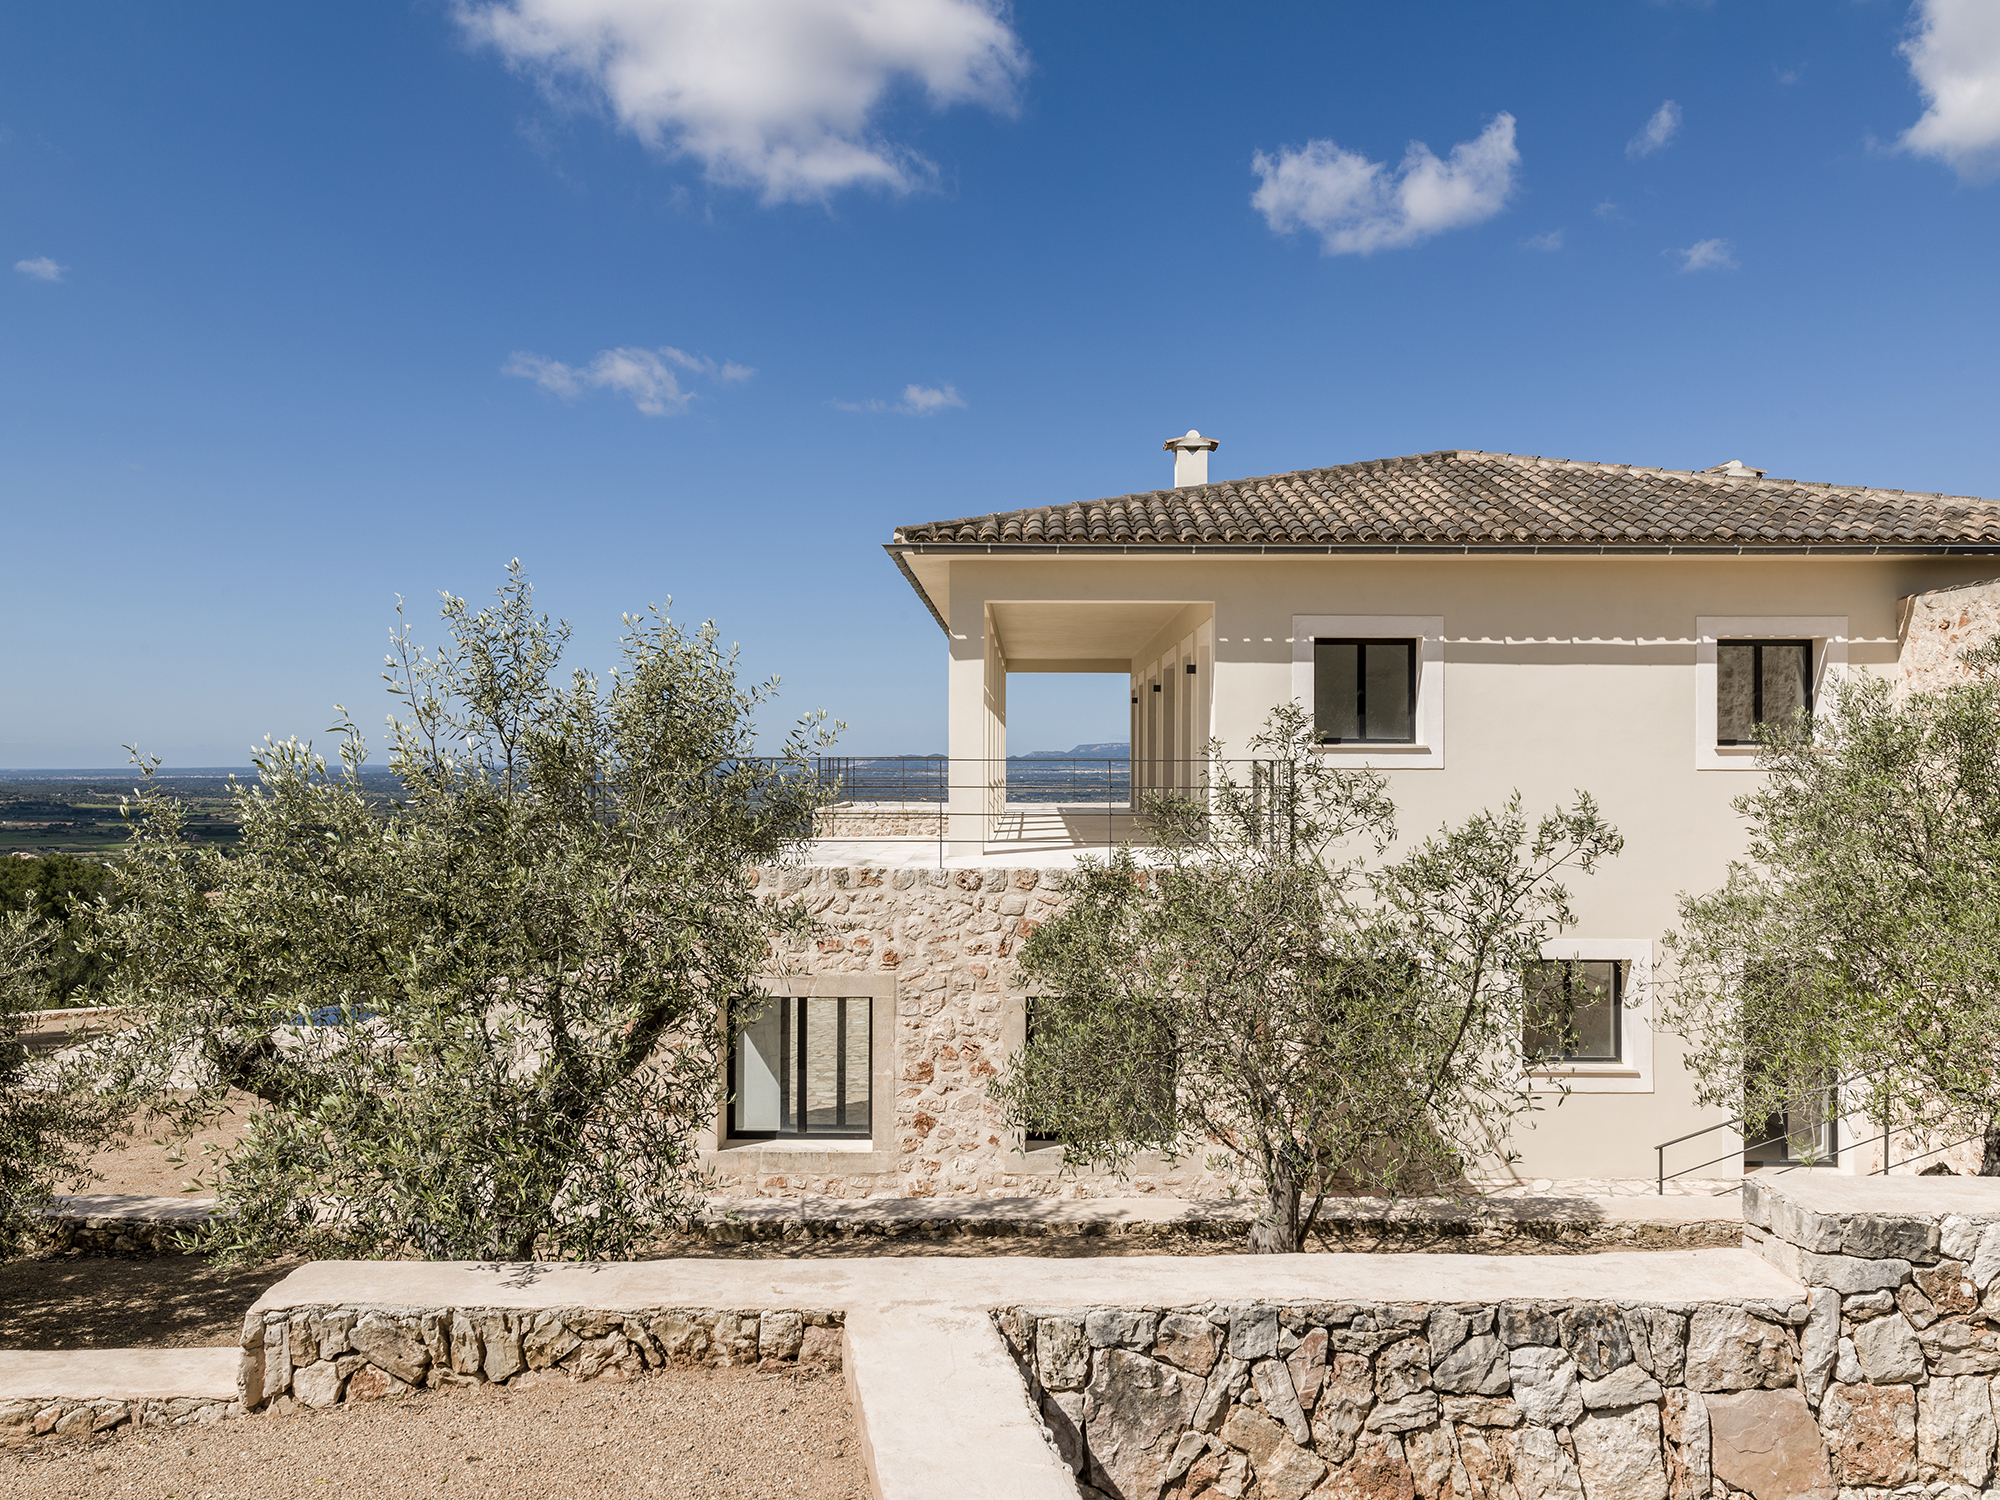 Zweistöckiges Haus mit Stein- und Gipsfassade, umgeben von Olivenbäumen unter einem klaren blauen Himmel, mit internationalen Angeboten.